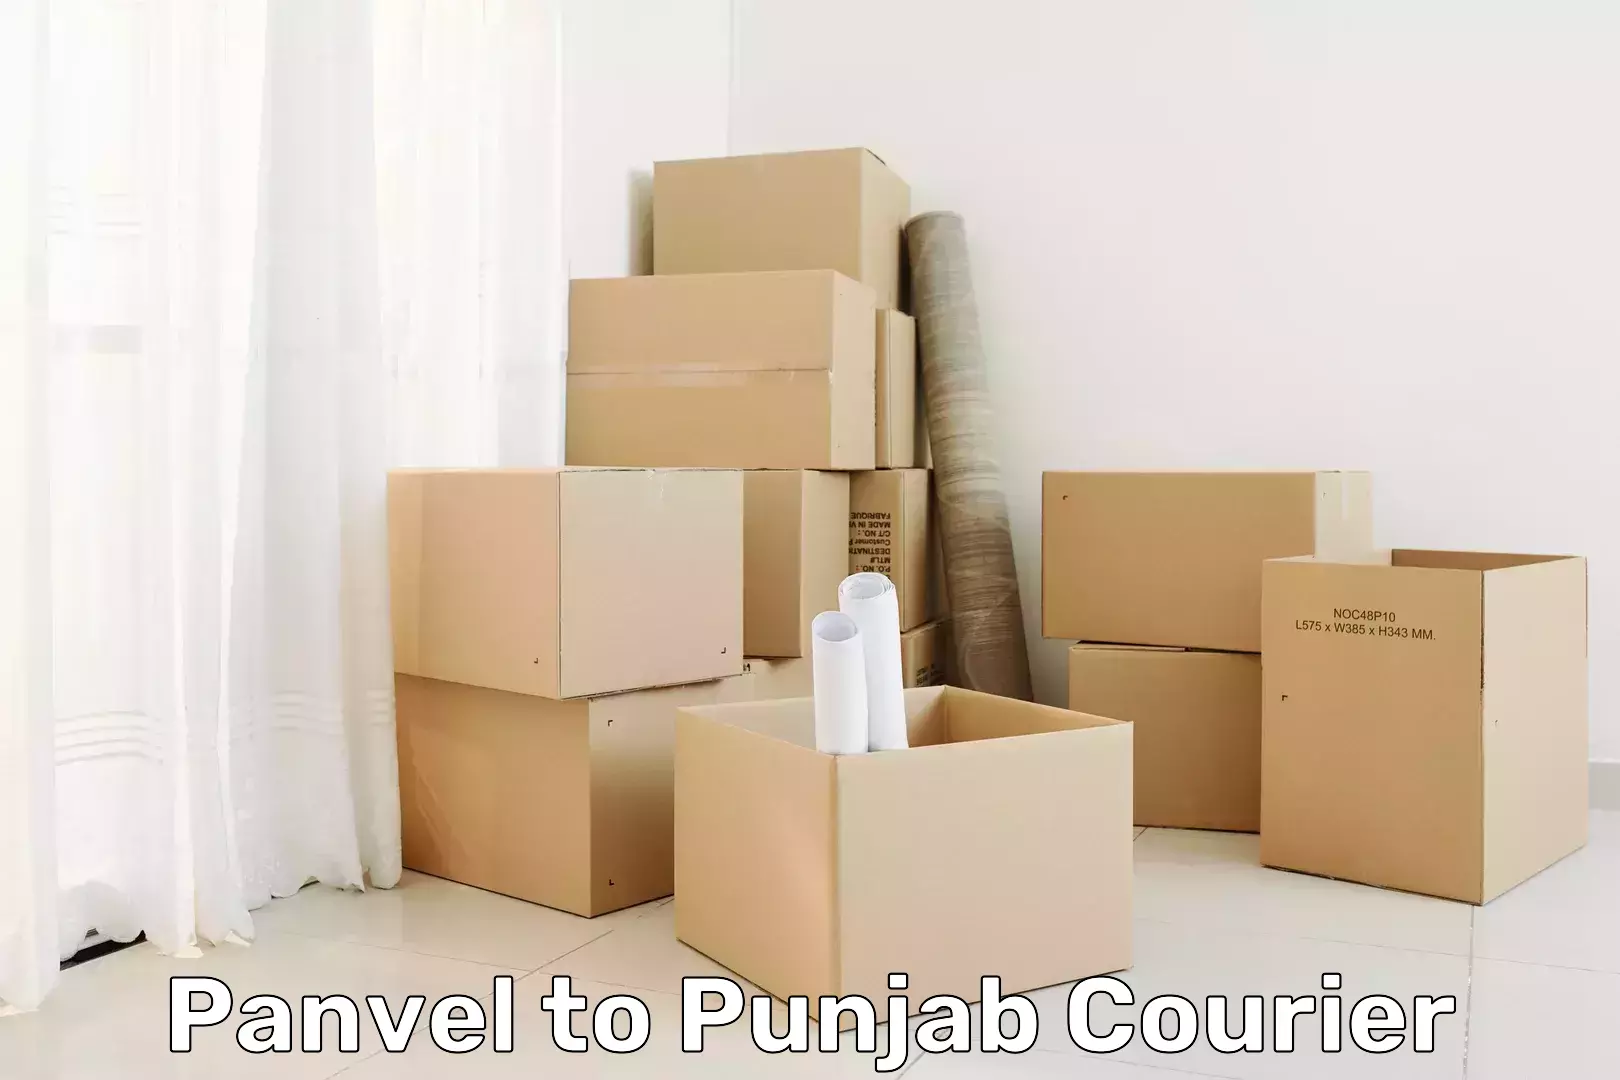 Professional courier handling Panvel to Punjab